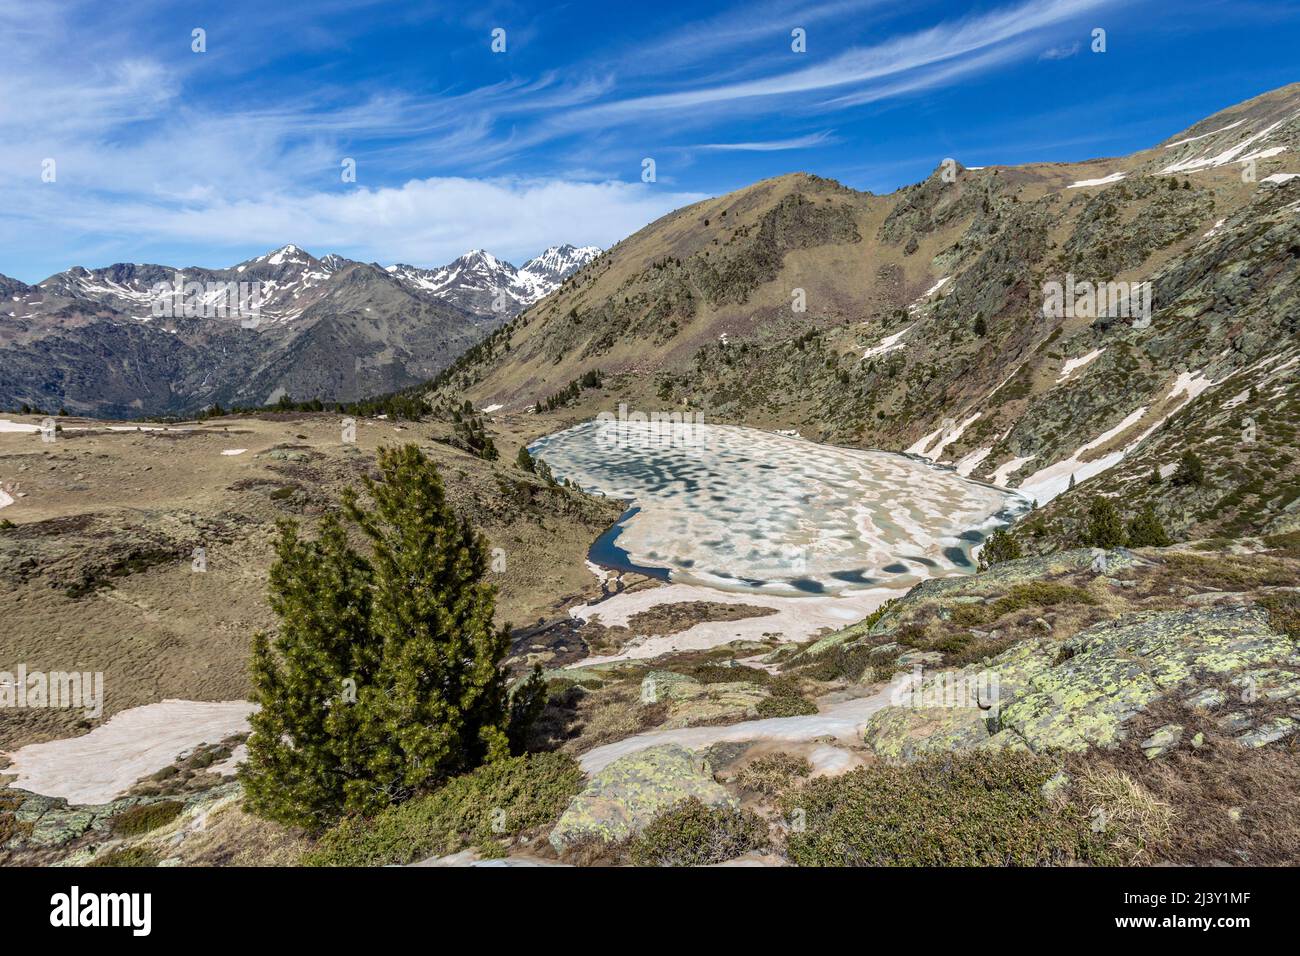 Aixeus lake, Ferrera valley, Alt Pirineu natural park, Pyrenees, Spain Stock Photo